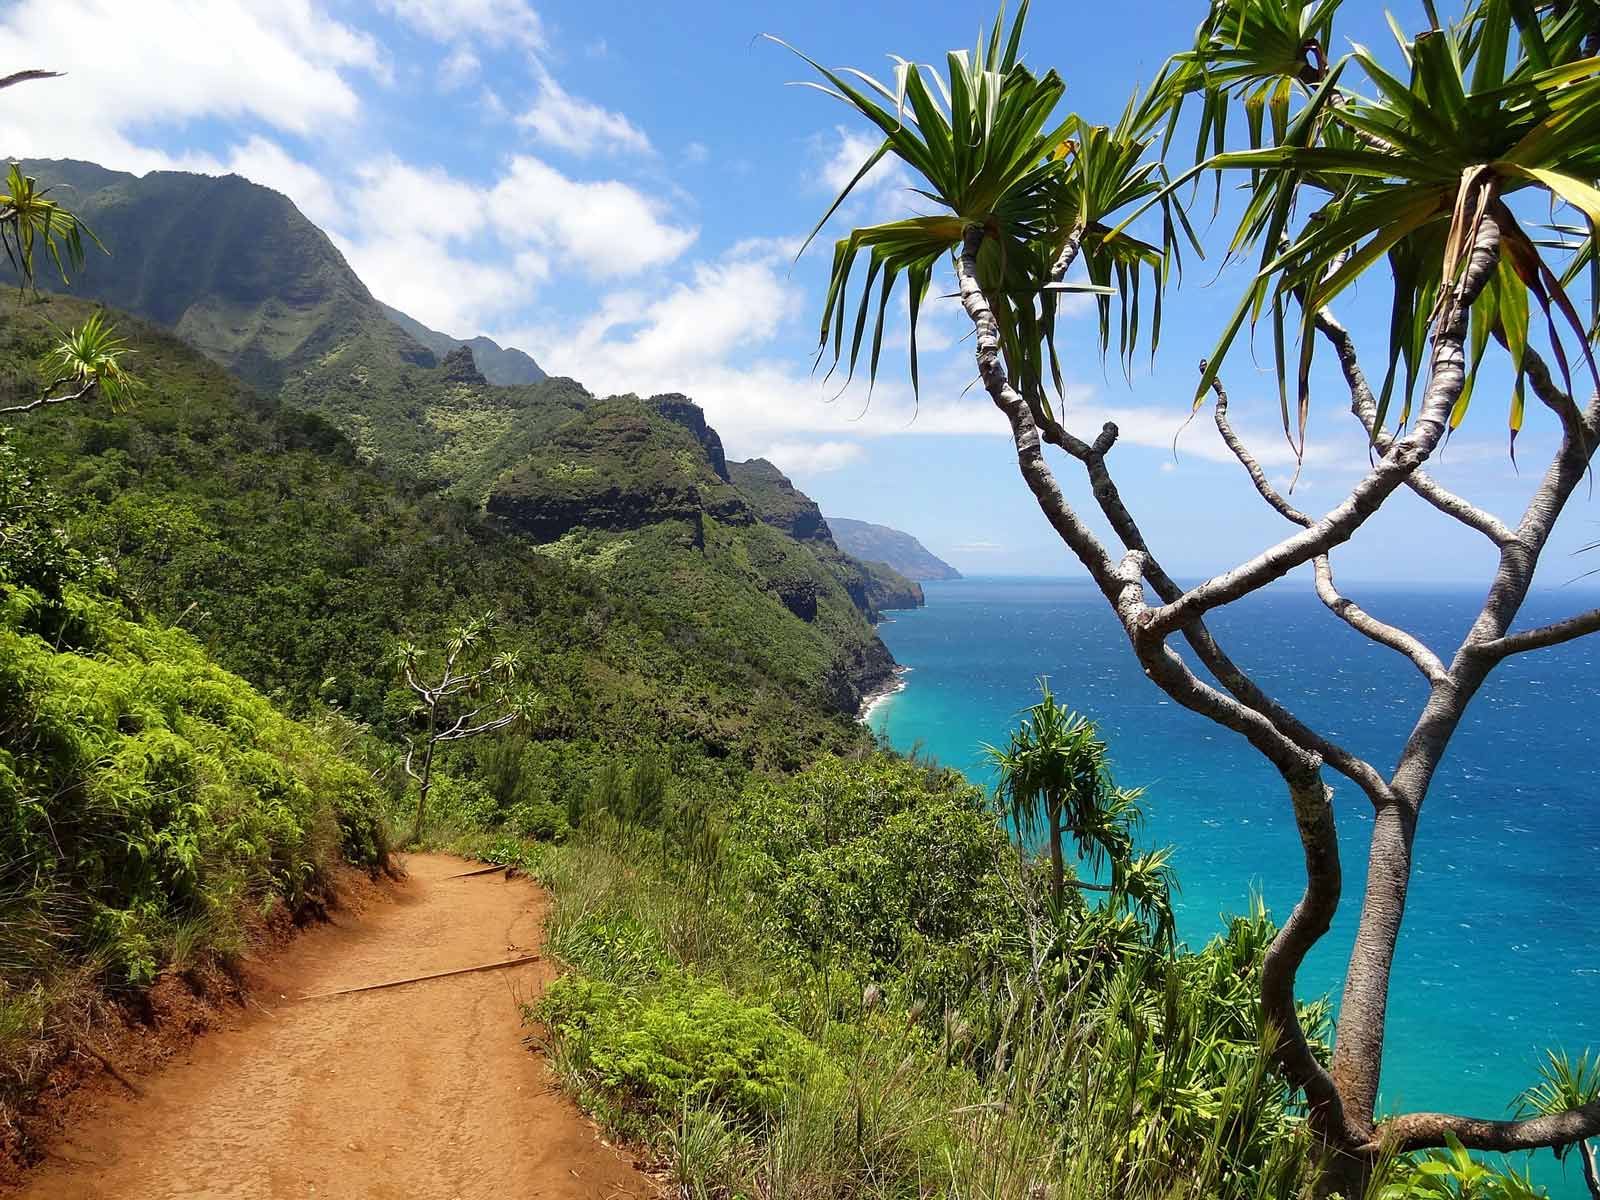 Top Things to do in Kauai